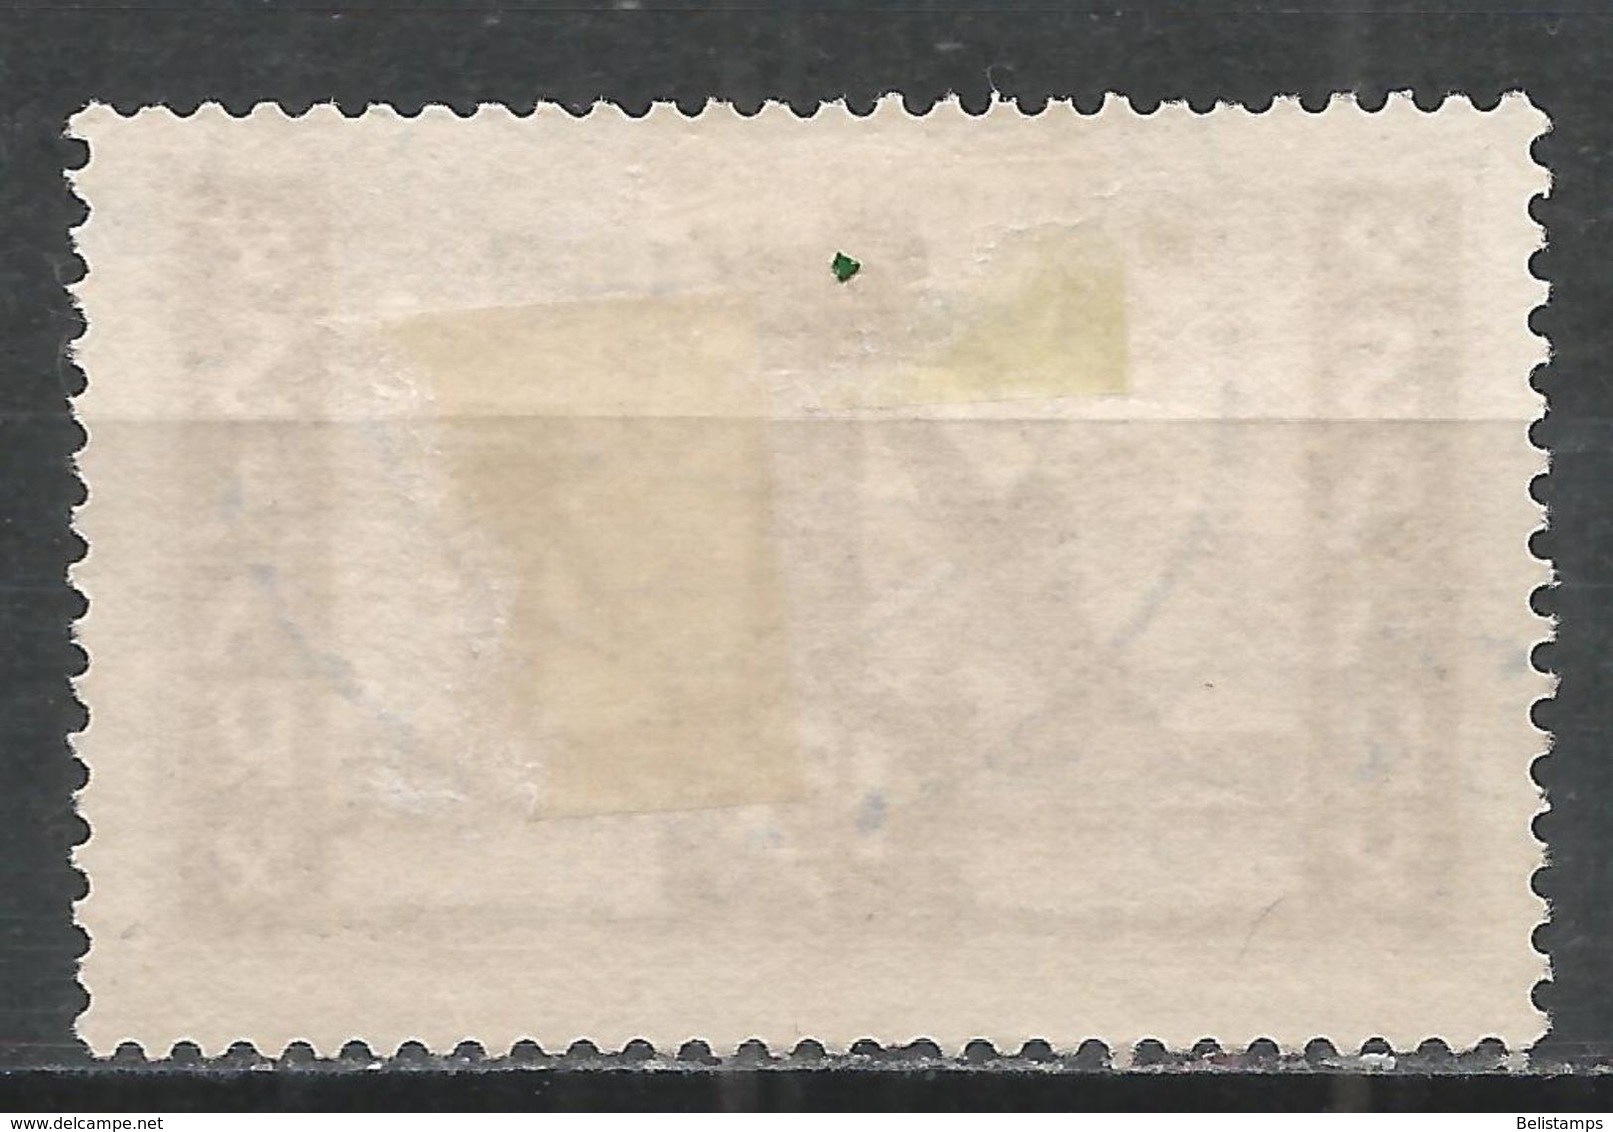 Saar 1952. Scott #240 (U) Mine Shafts - Used Stamps